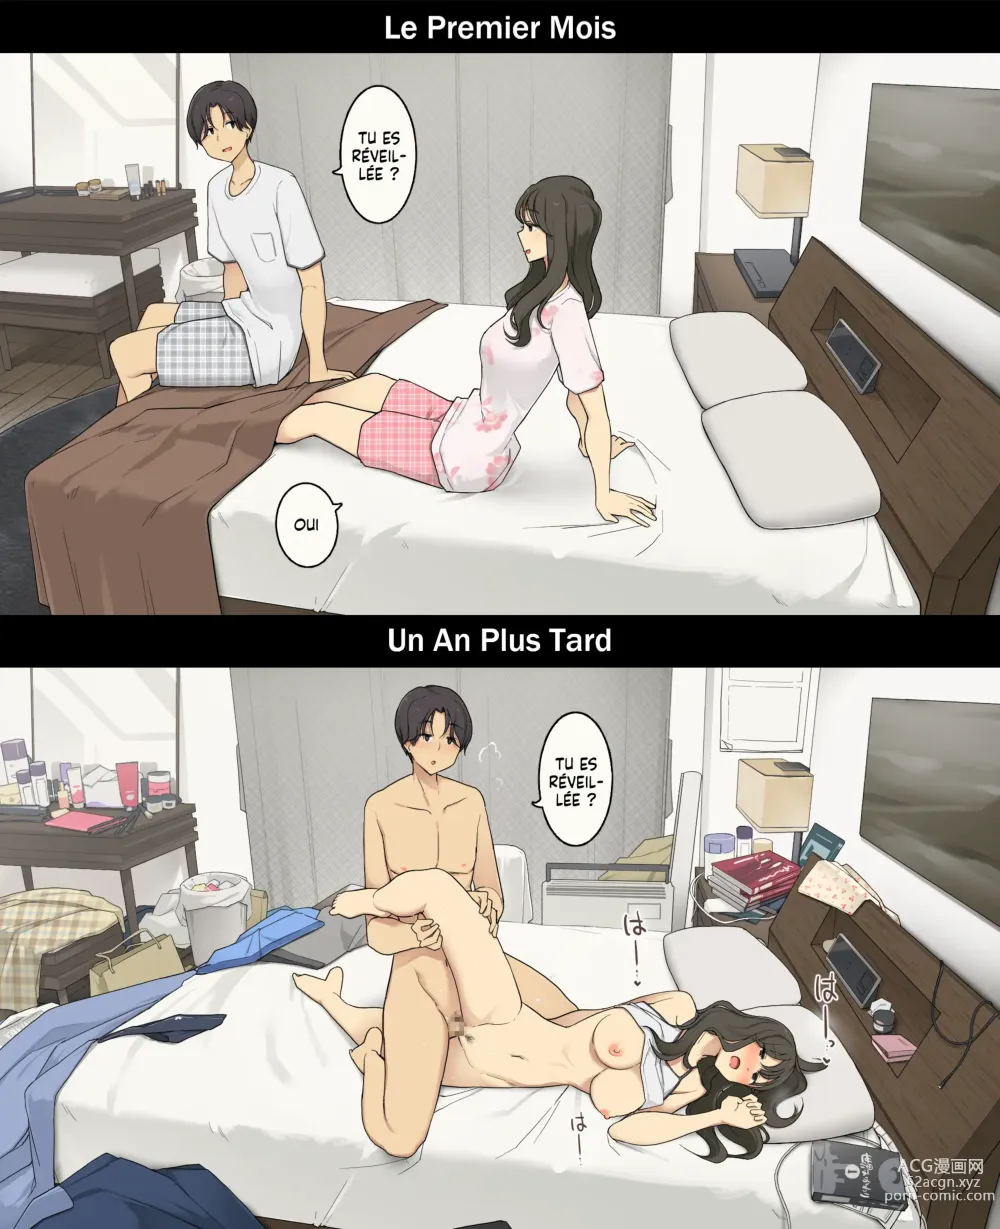 Page 5 of doujinshi Une journée dans la vie d'un couple : Premier mois vs un an plus tard